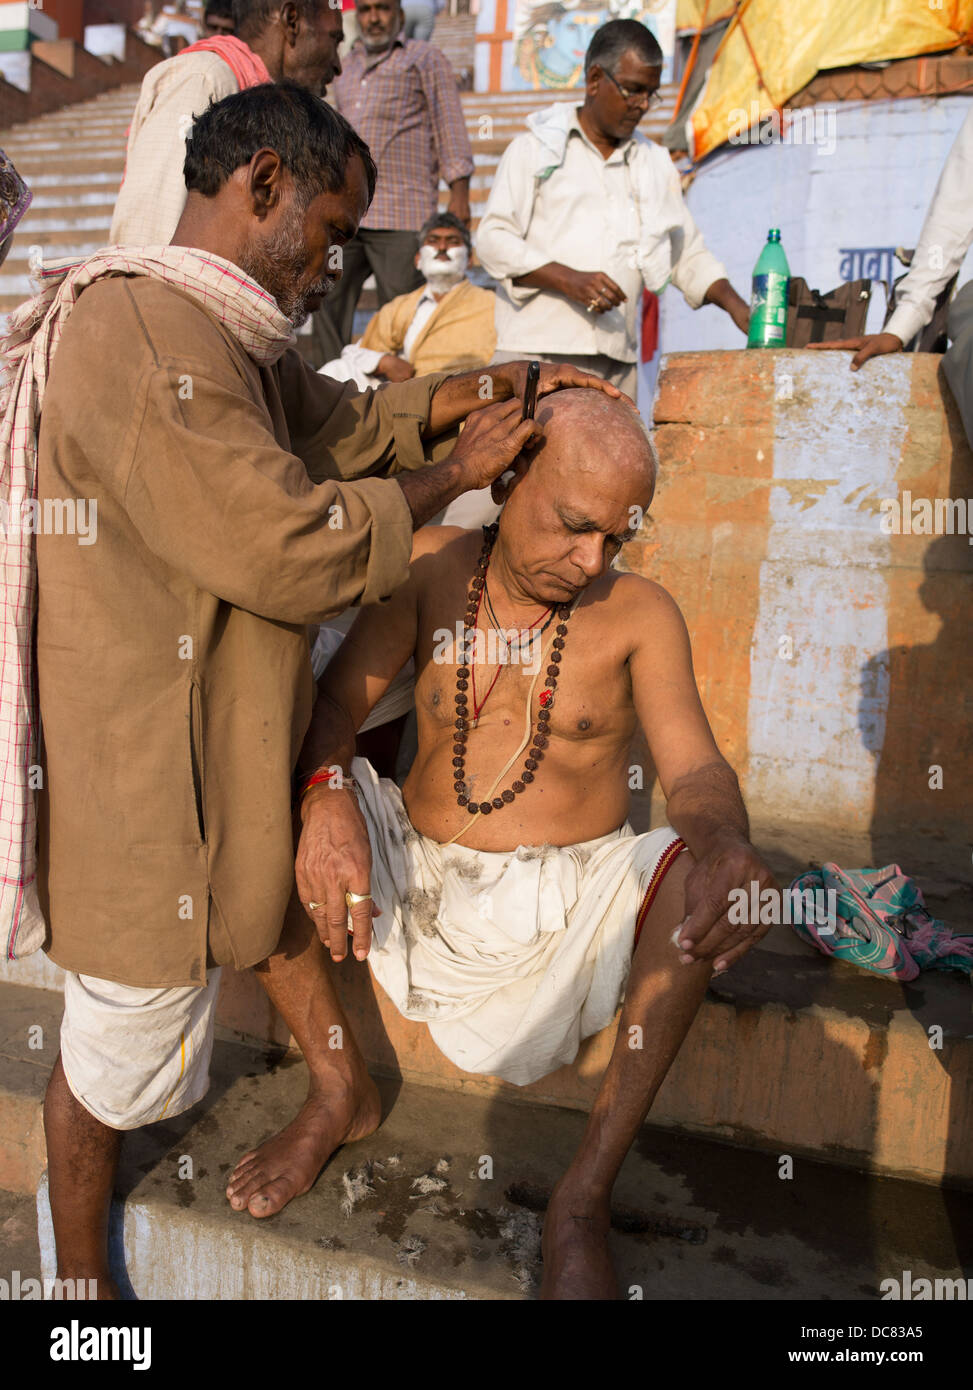 Morgen rasieren. Haare schneiden. Leben am Ufer des Flusses Ganges - Varanasi, Indien Stockfoto